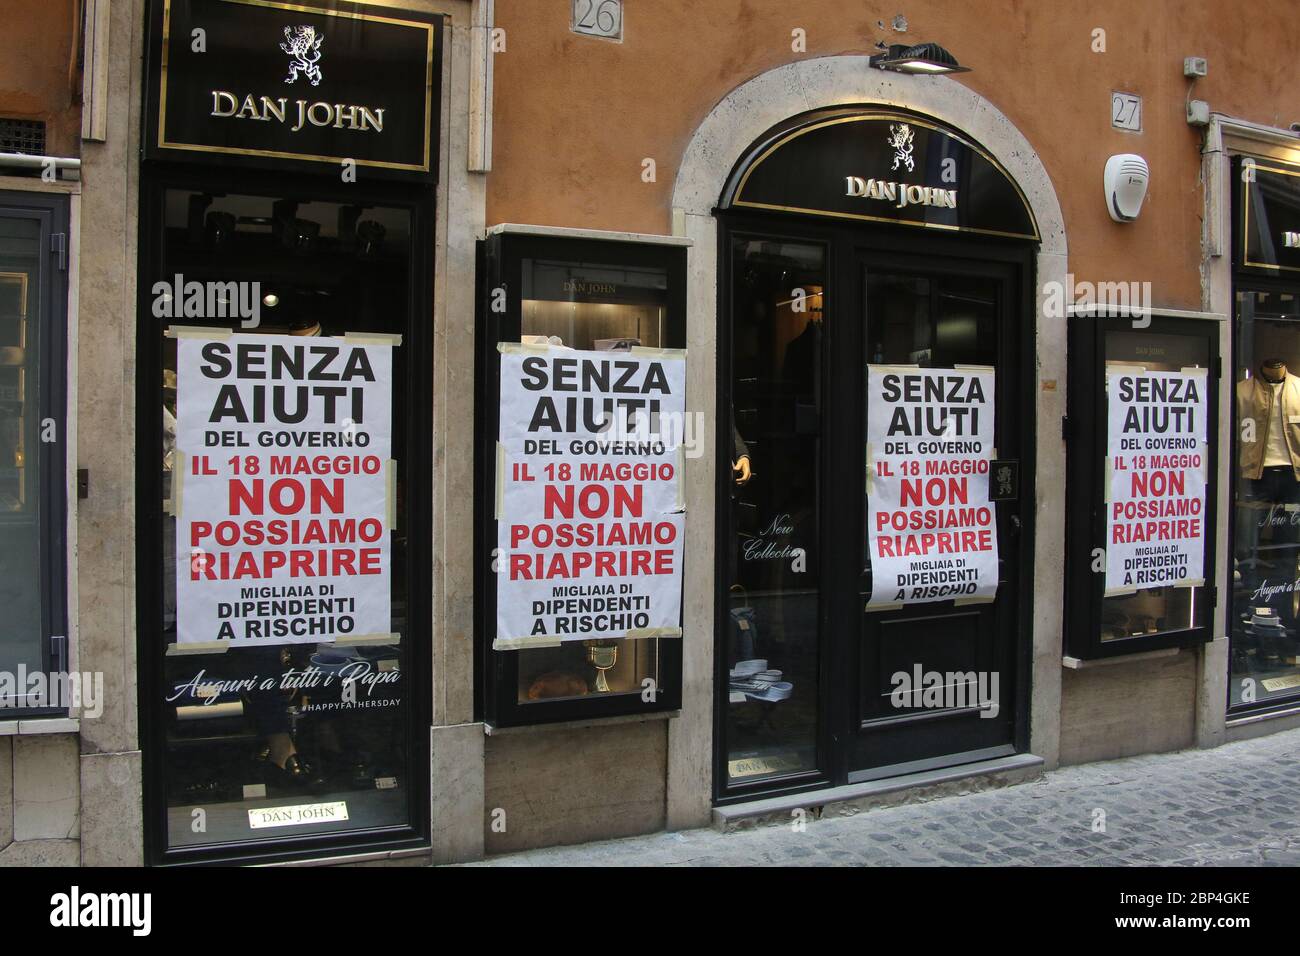 Roma, Italia, 17 maggio 2020: Manifesti di protesta dei negozianti a Roma, nell'ultimo giorno di lockdown dopo quasi 3 mesi di quarantena per causa della pandemia Covid-19. Stock Photo